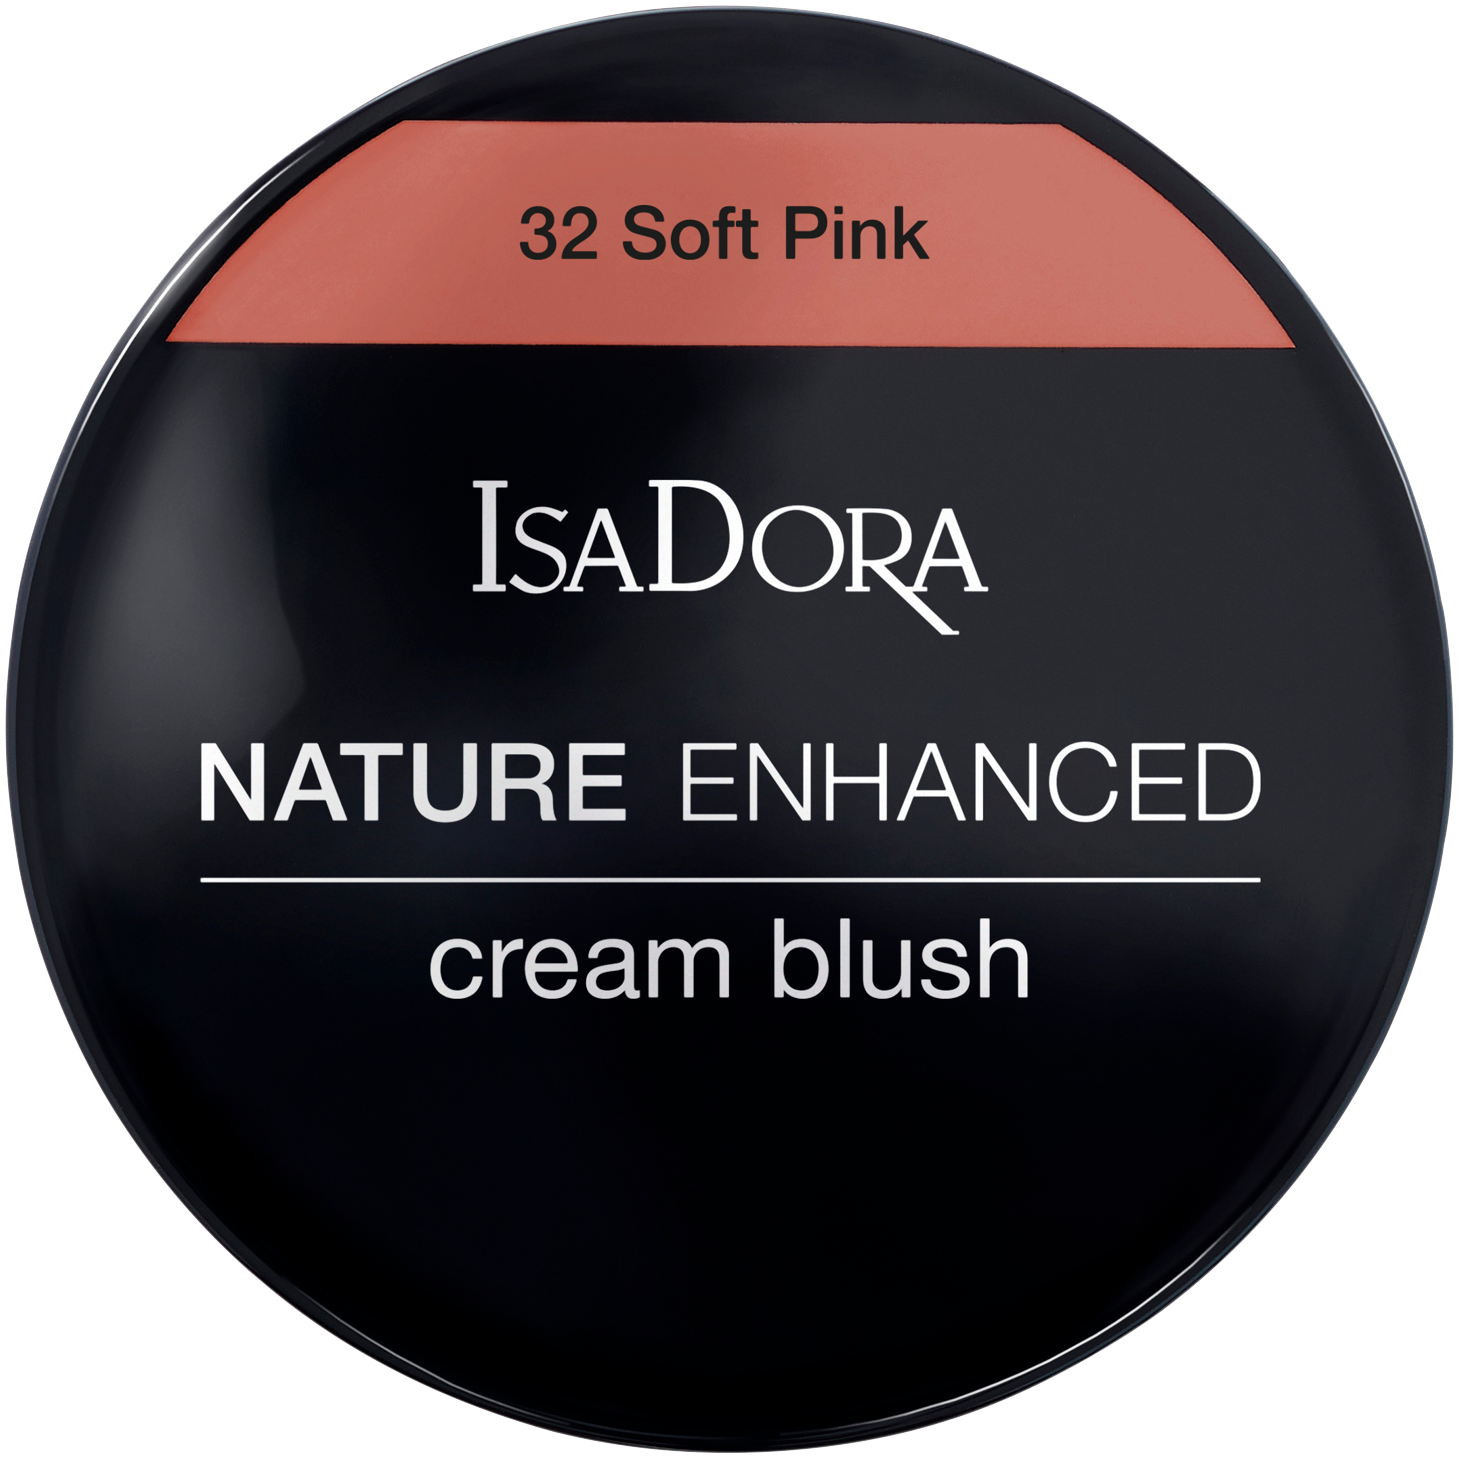 Кремовые румяна 32 нежно-розовые Isadora Nature Enhanced, 3 гр румяна кремовые isadora nature enhanced cream blush 3 мл